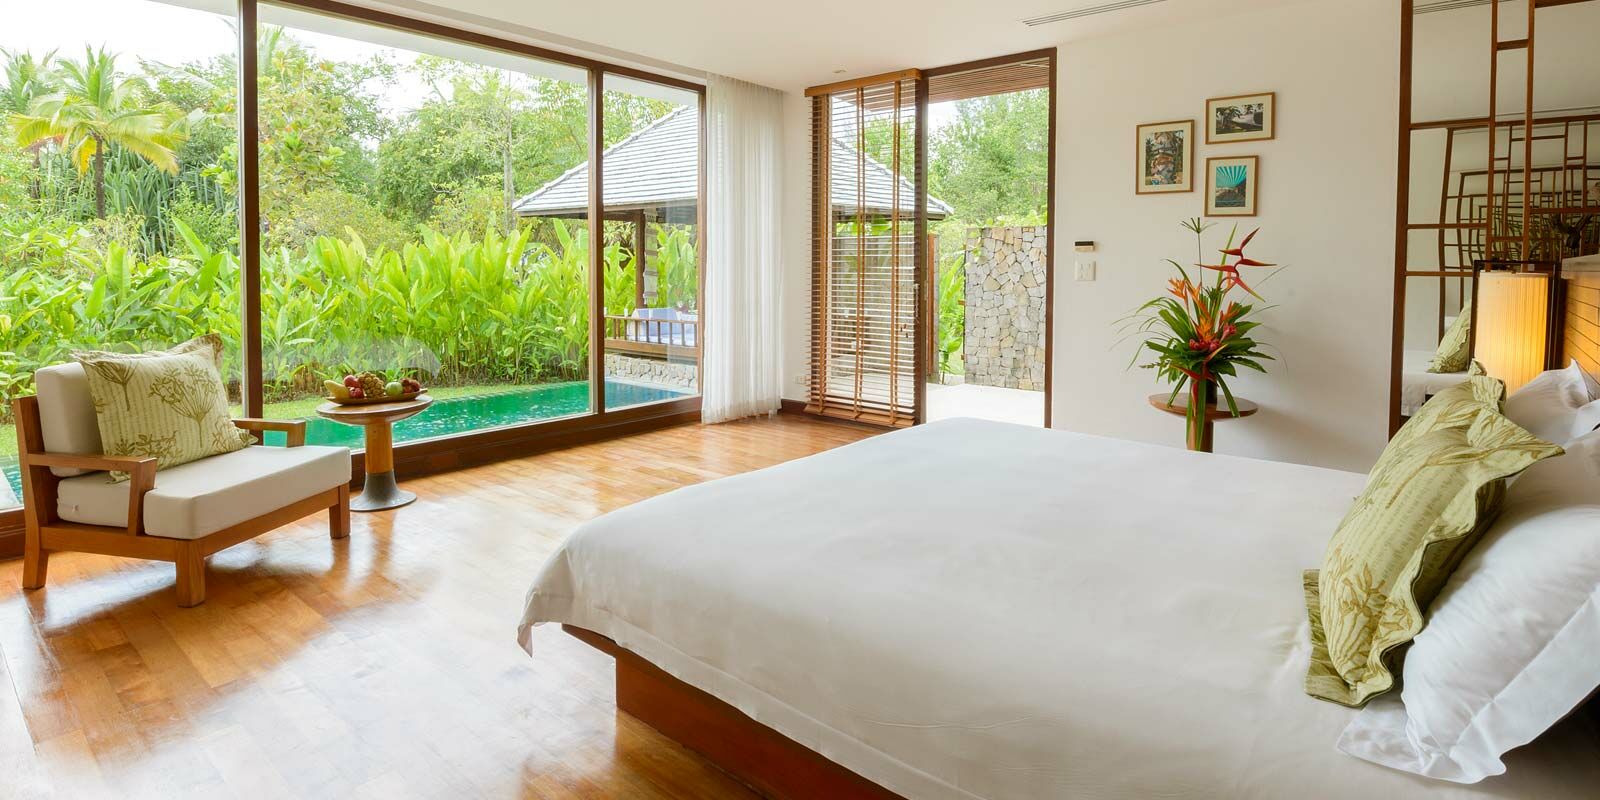 FOTO: 2-Bedroom Pool Residence The Sarojin - ekološki hoteli